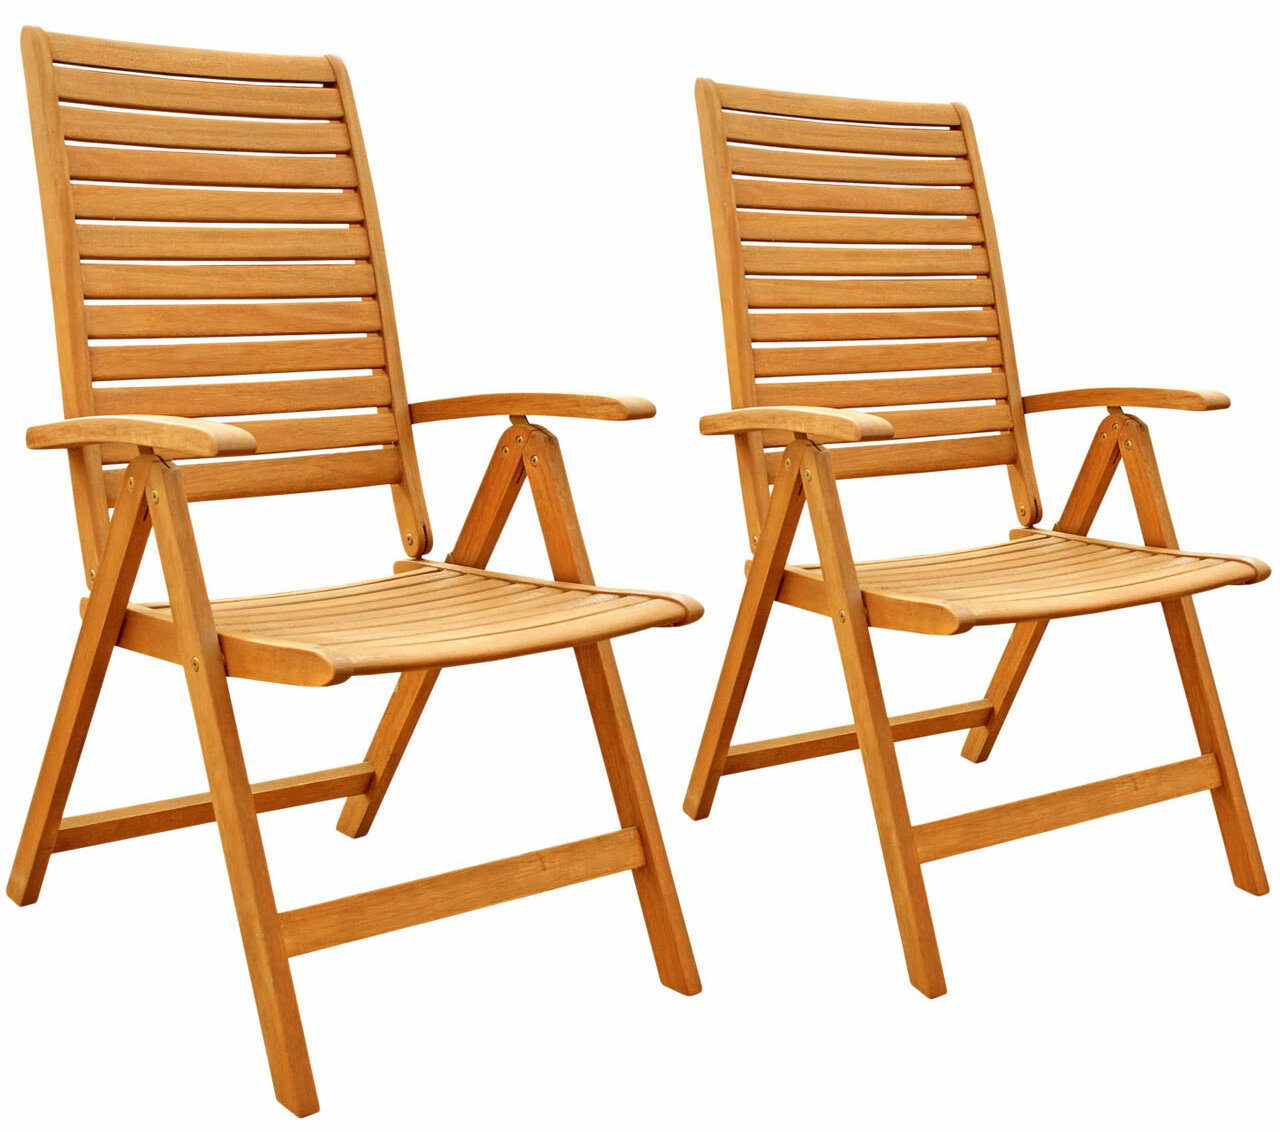 Garden chairs wooden